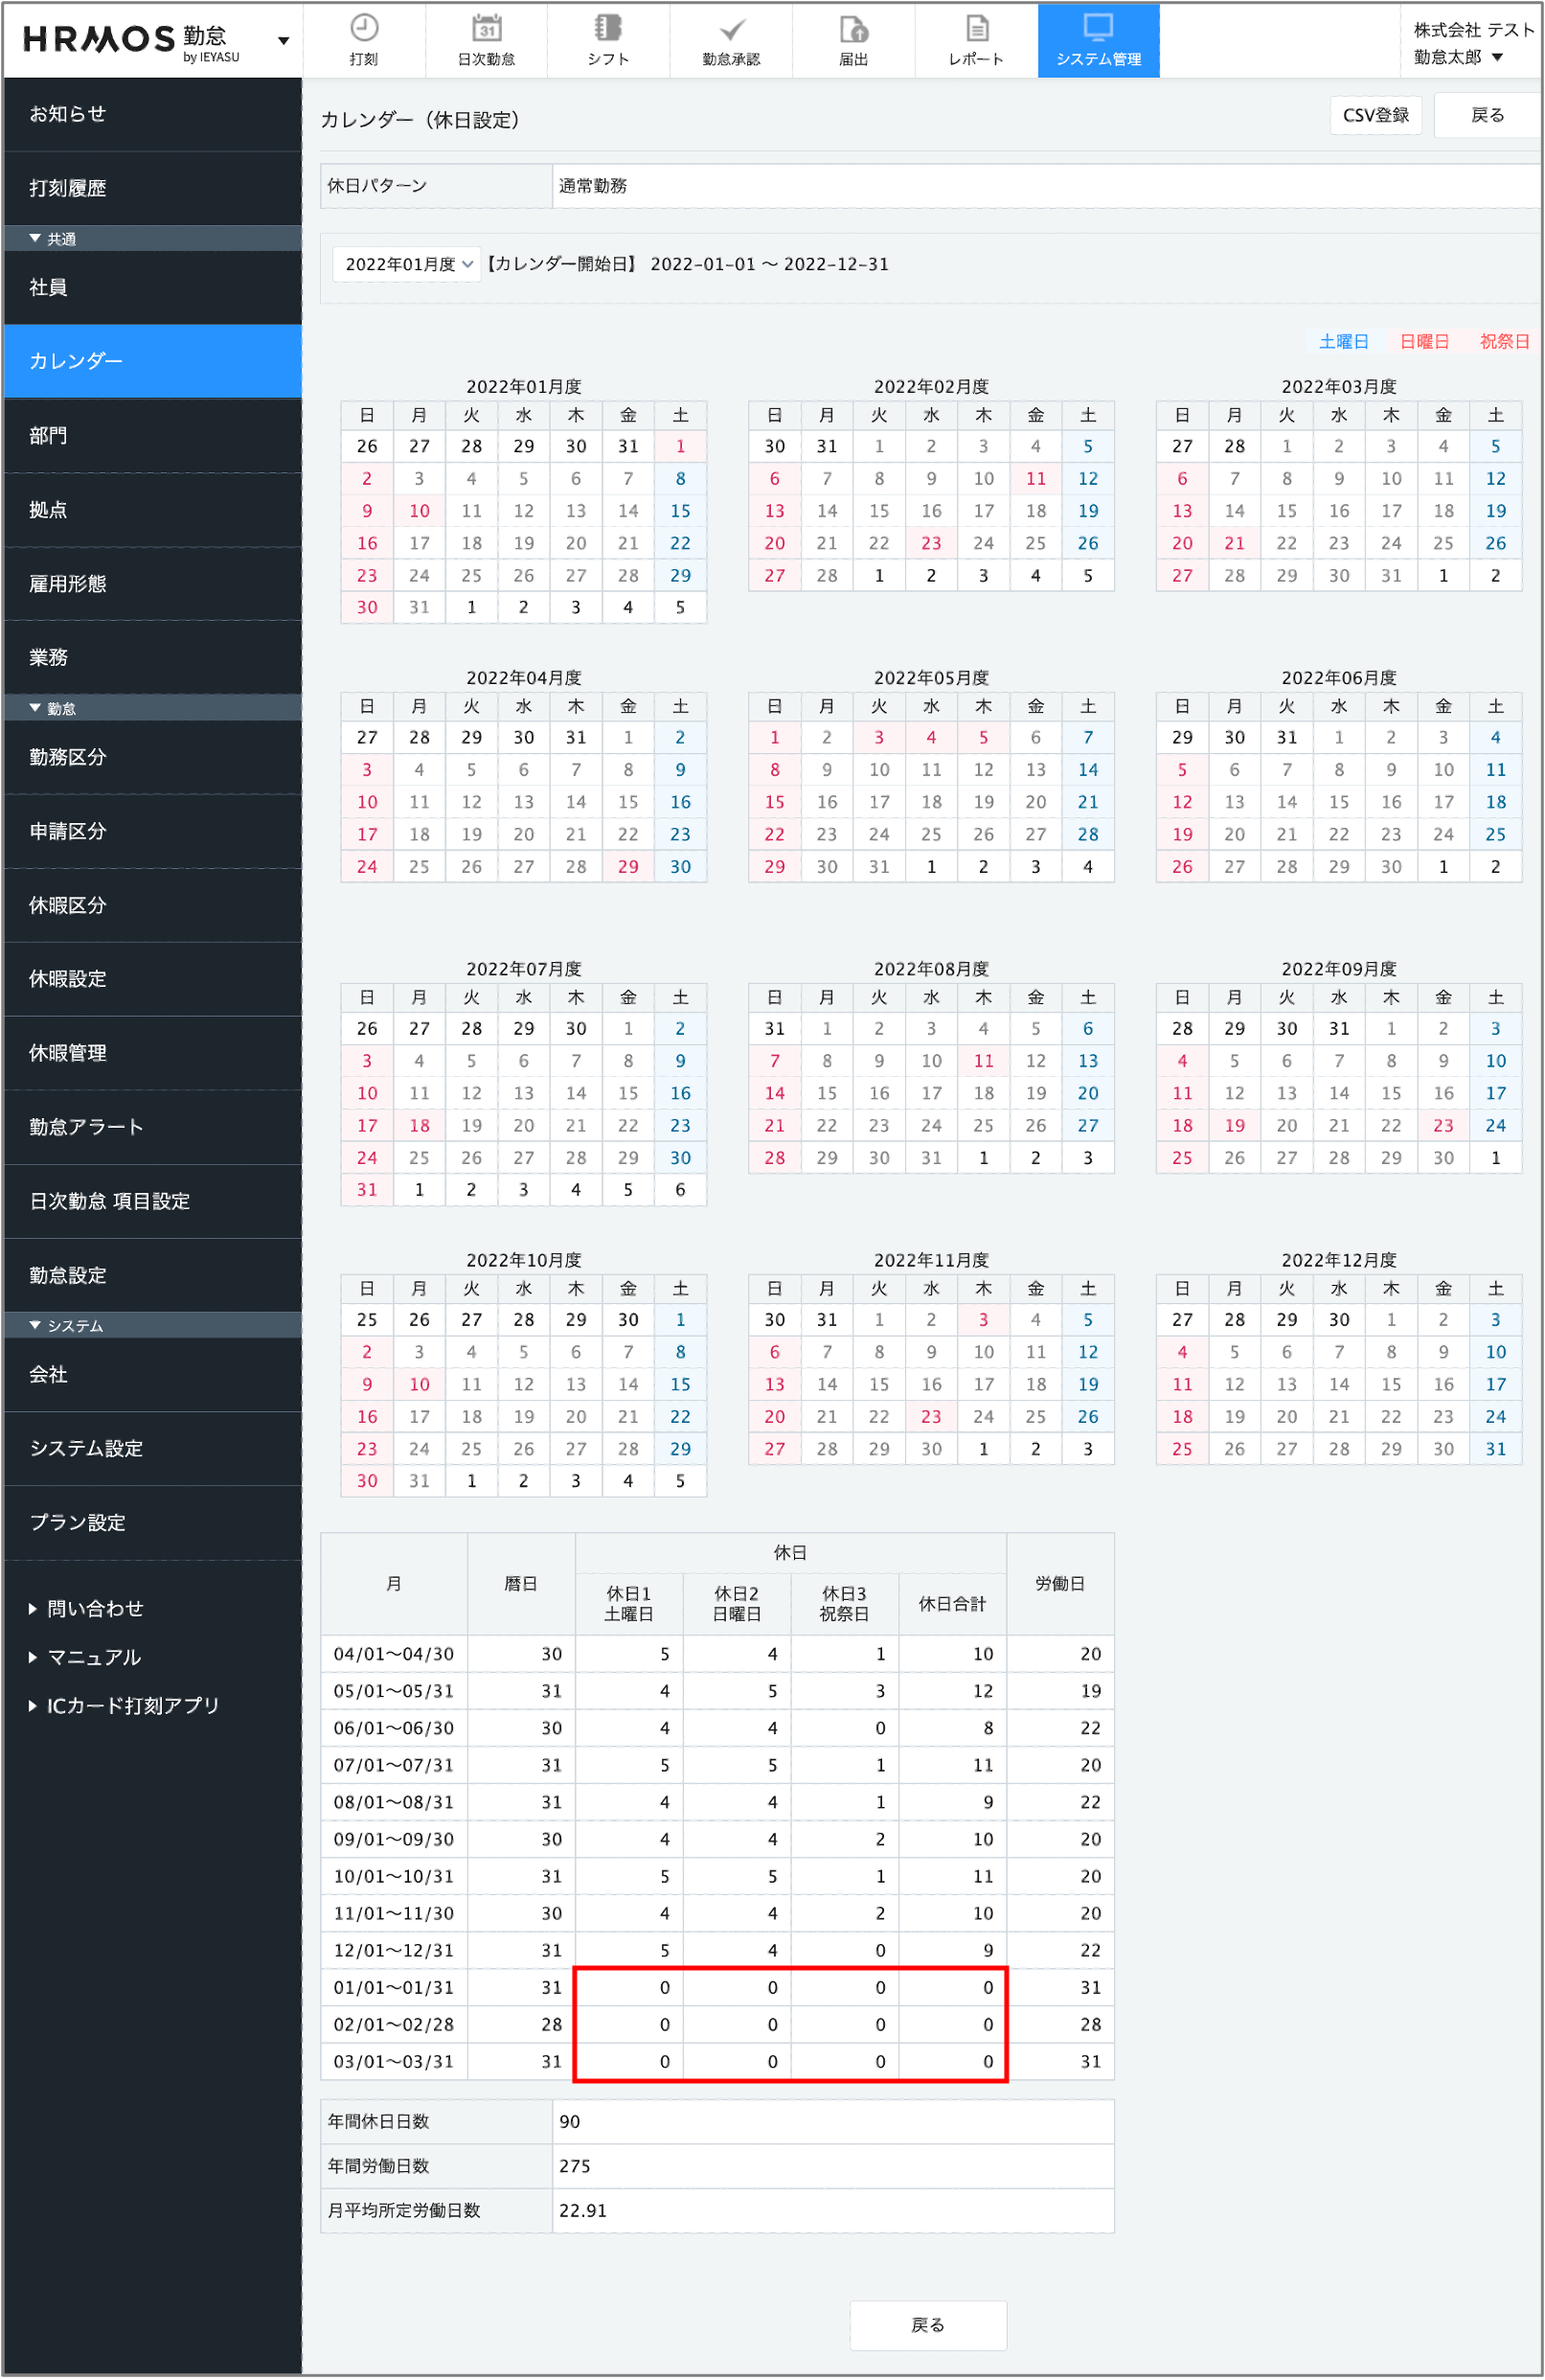 システム管理 カレンダー 設定する カレンダー表示 ページ下部の月別一覧にて 1月から3月までが全て0になっている Ieyasu Faq ベンチャー企業のための無料のクラウド勤怠管理システム